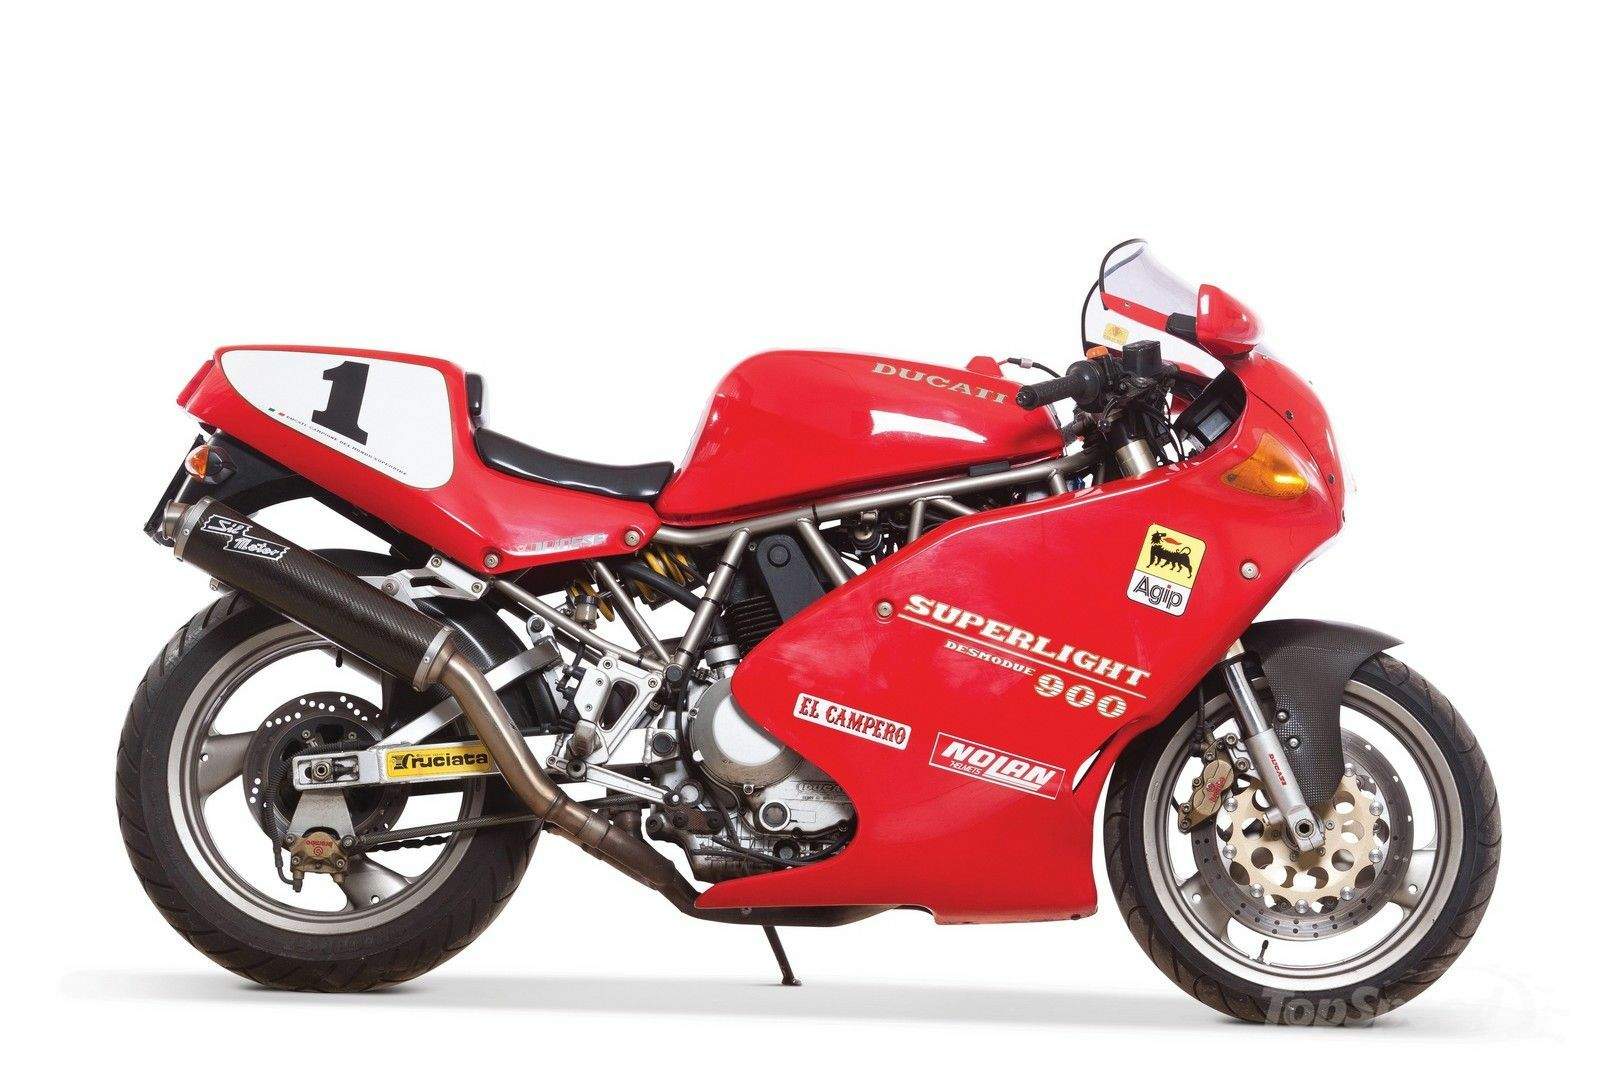 Фотография мотоцикла Ducati 900SL Superlight 1993